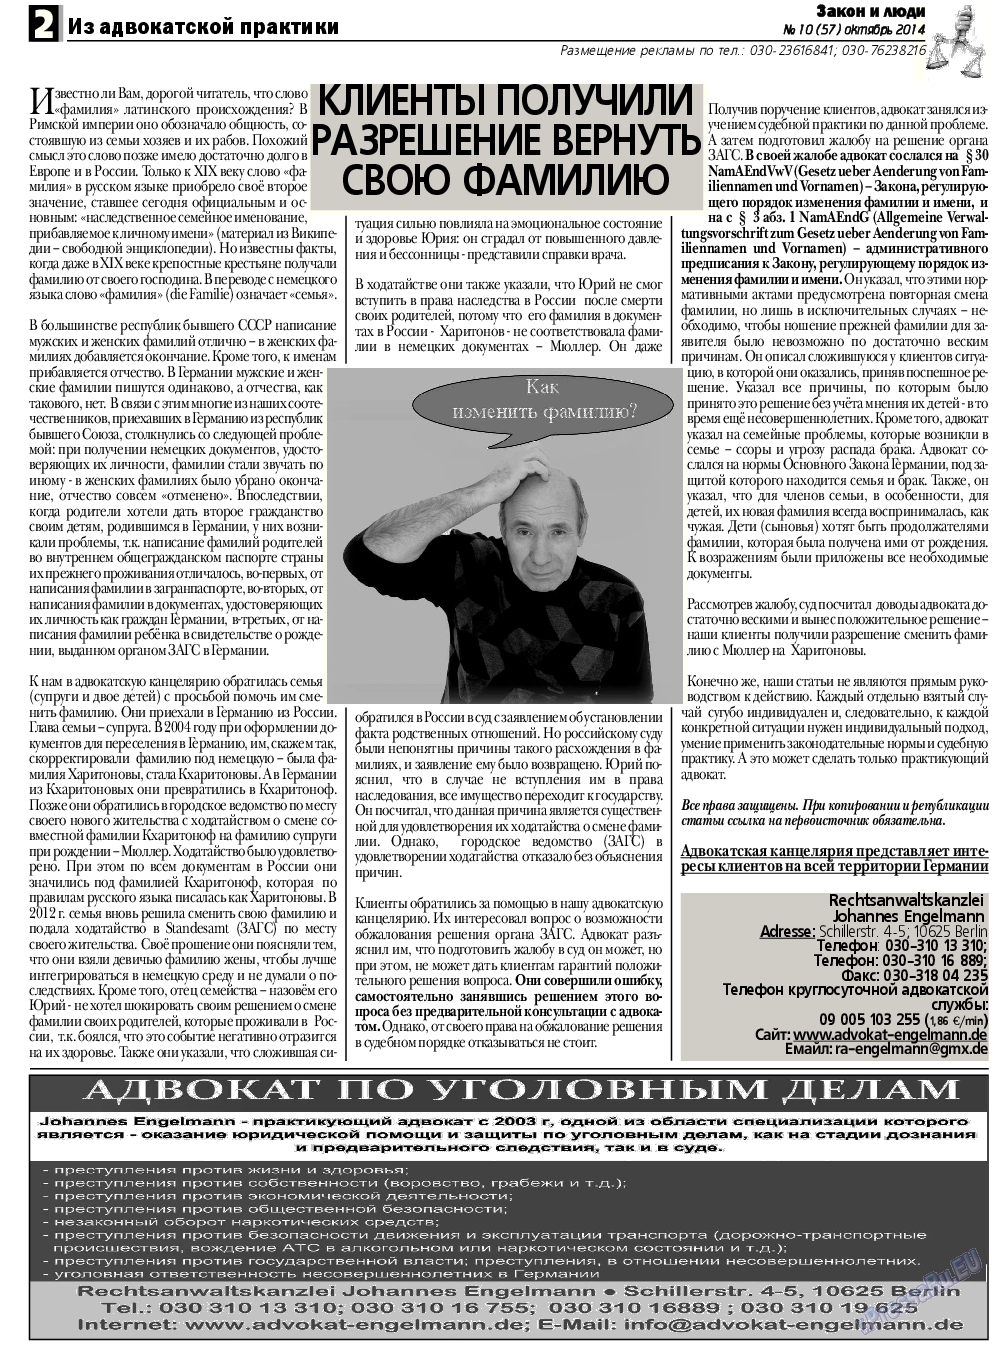 Закон и люди, газета. 2014 №10 стр.2